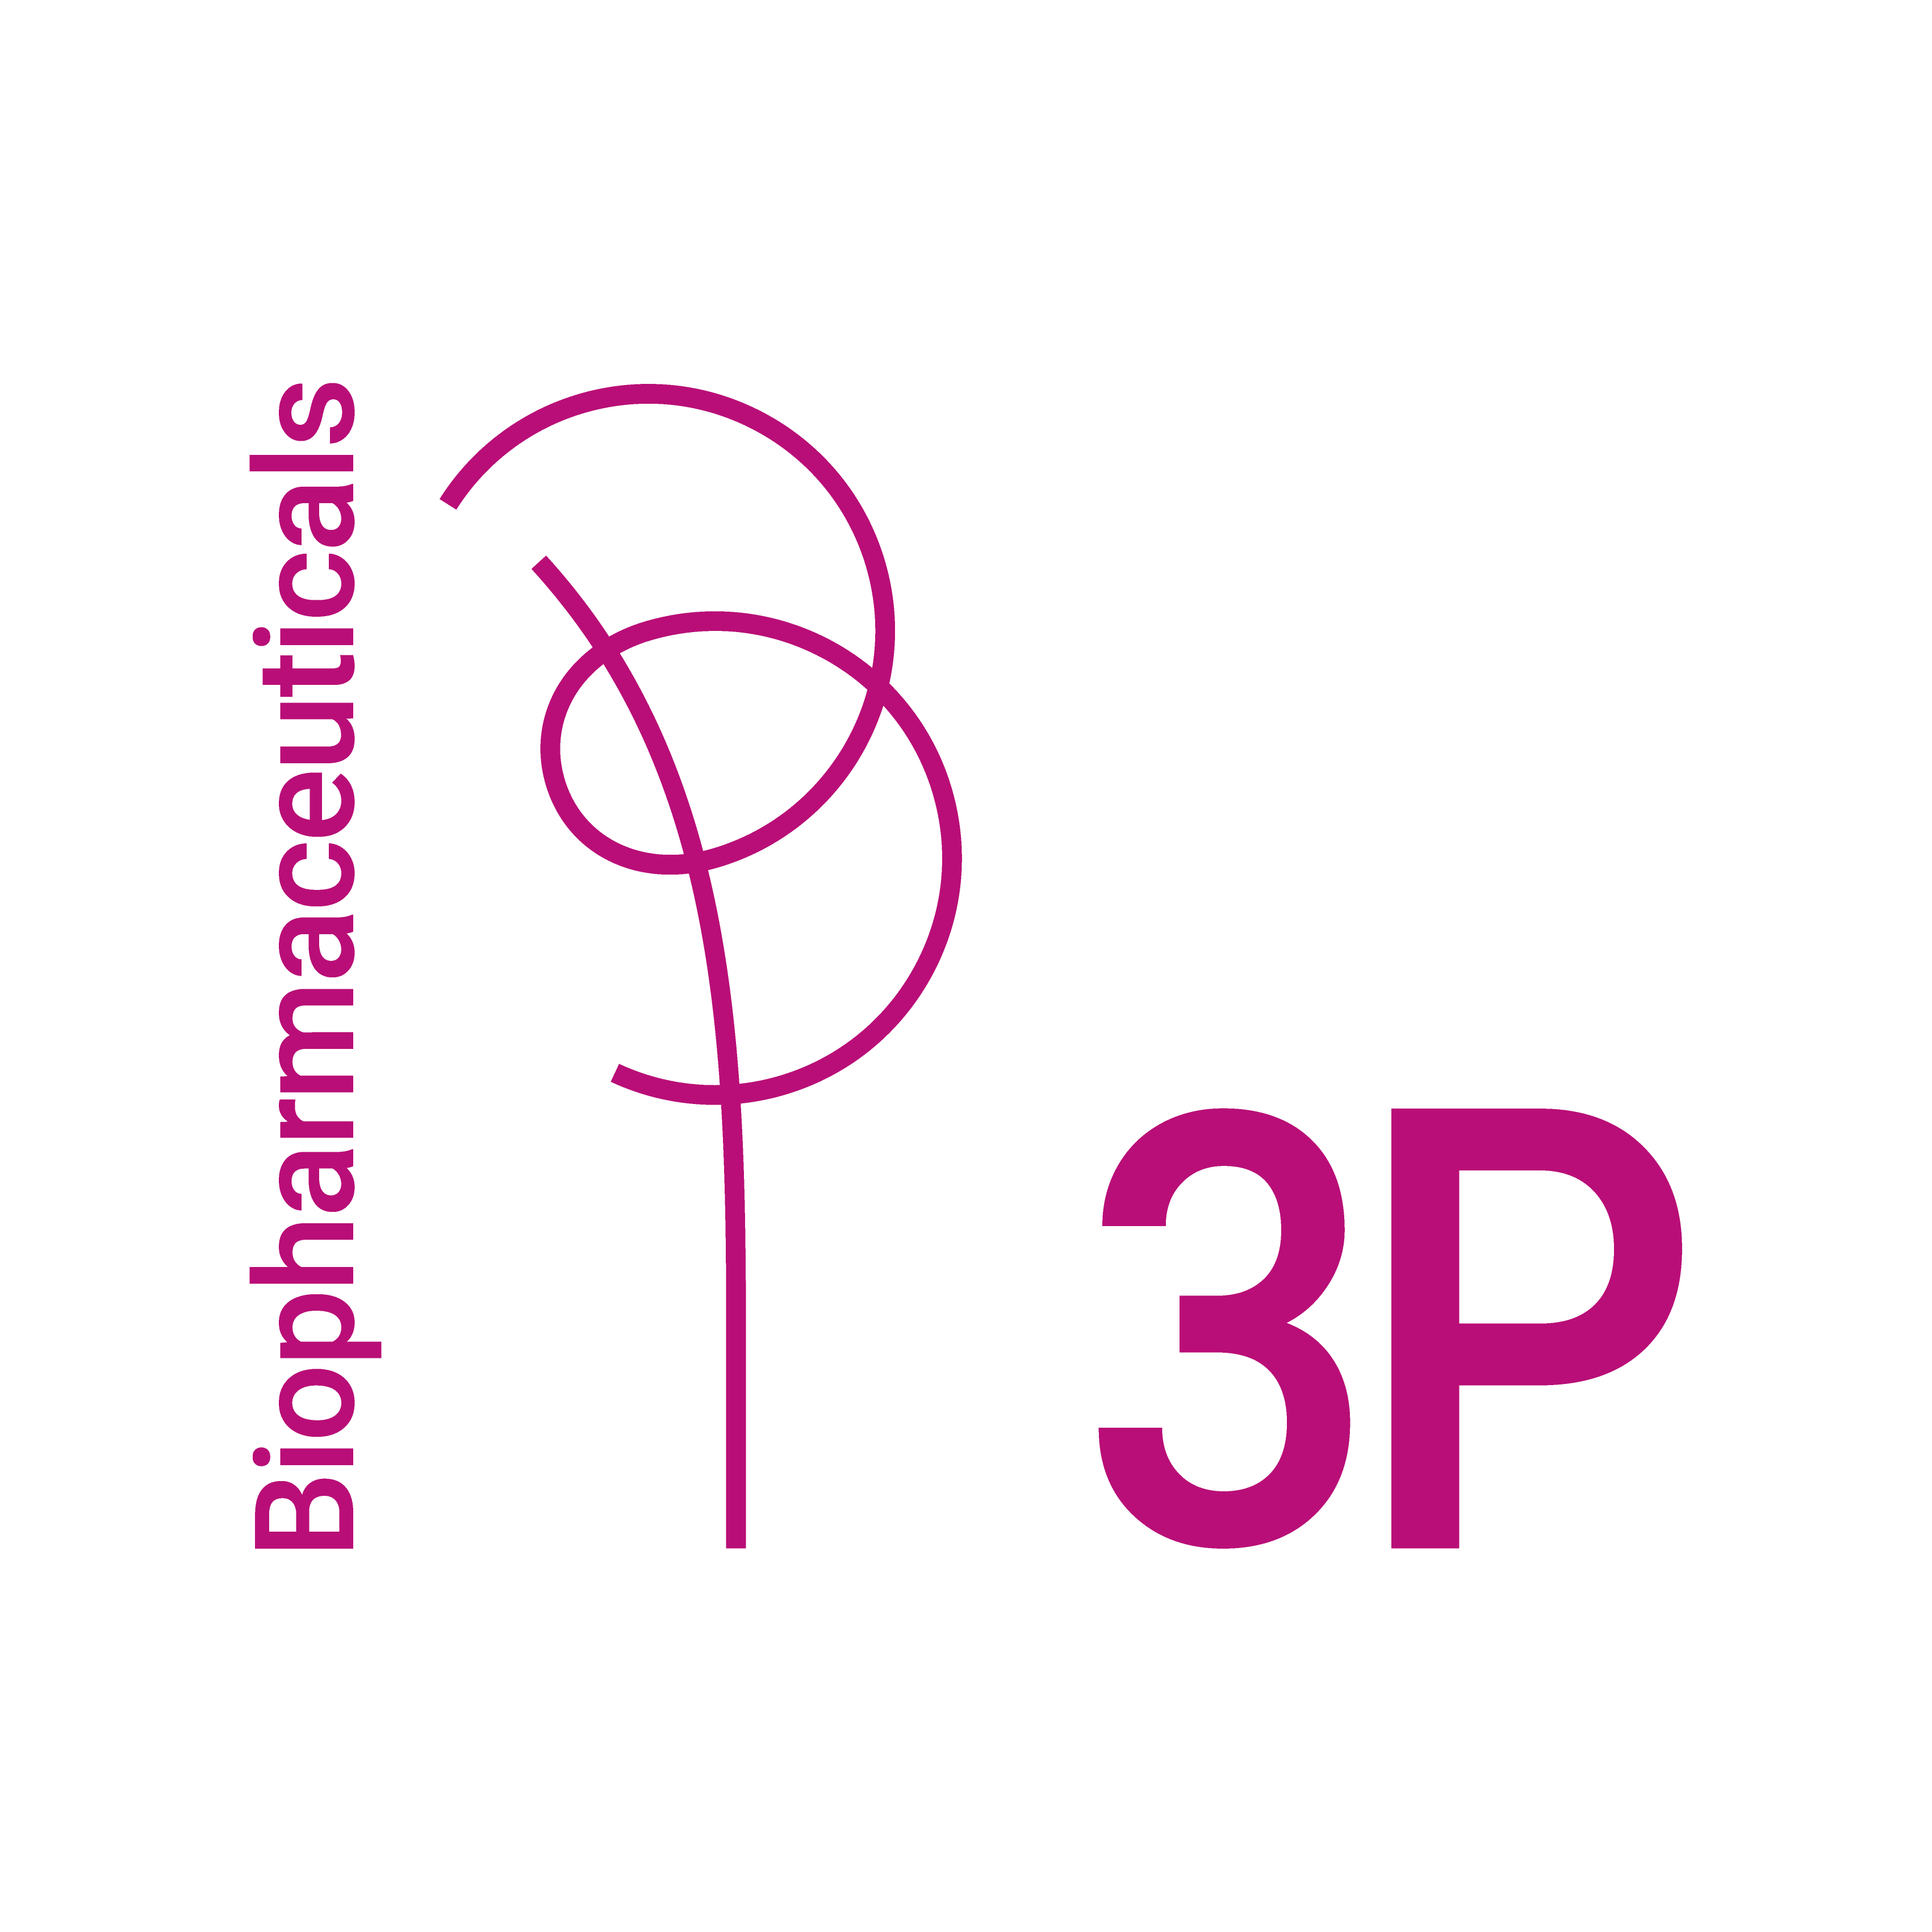 3P Biopharmaceuticals